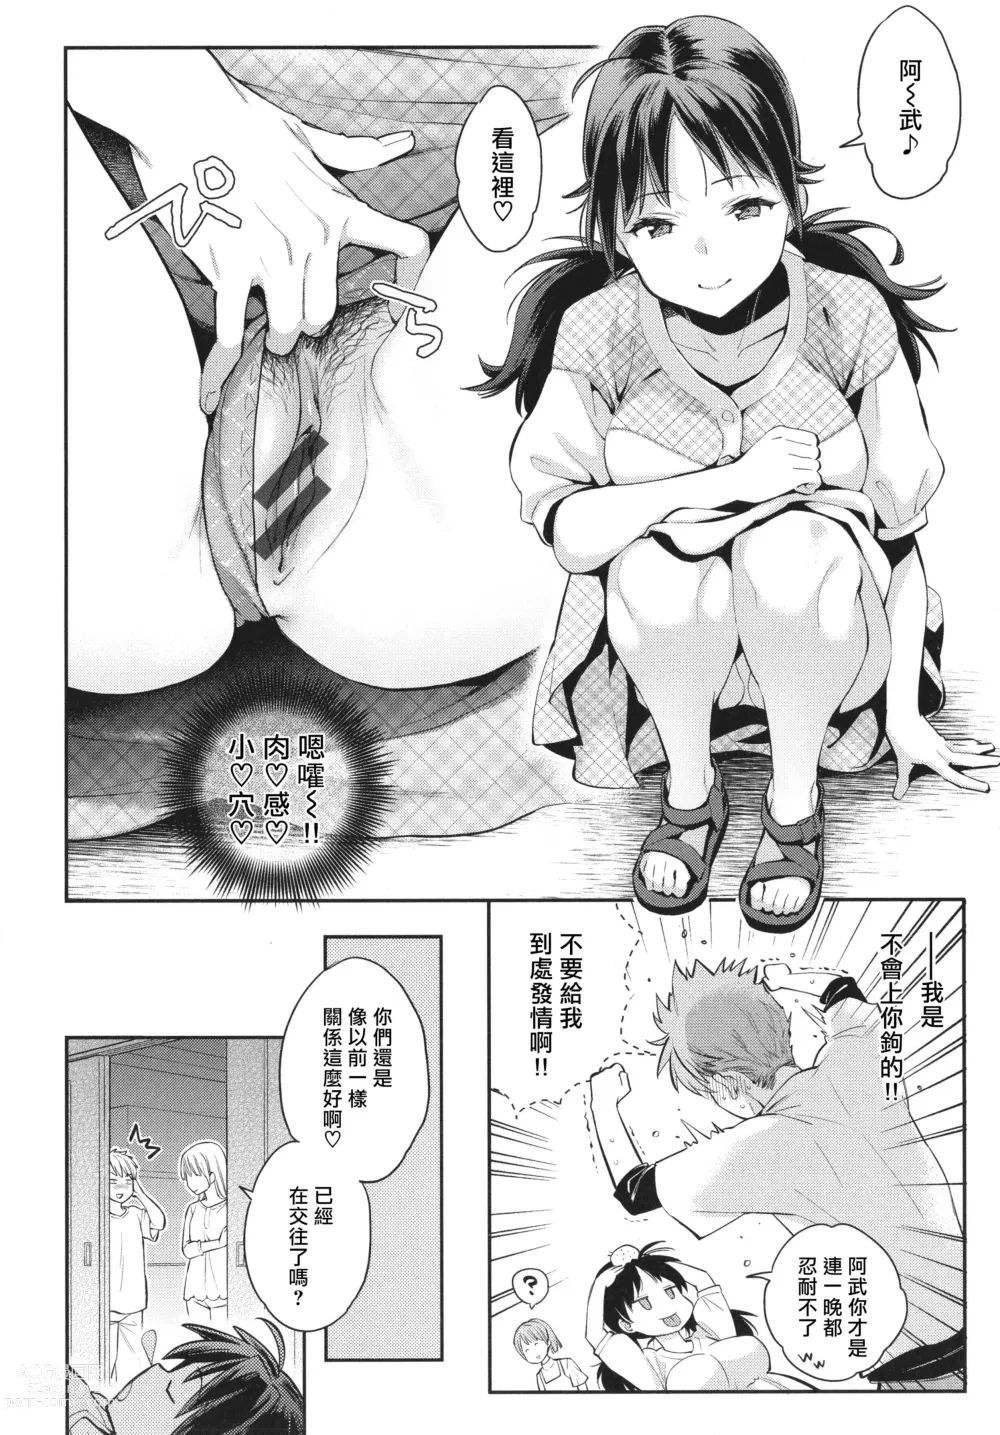 Page 15 of manga Anata to Gachinko Taiketsu - ANATA TO GACHINKO BATTLE!!!!! + Toranoana Gentei Leaflet